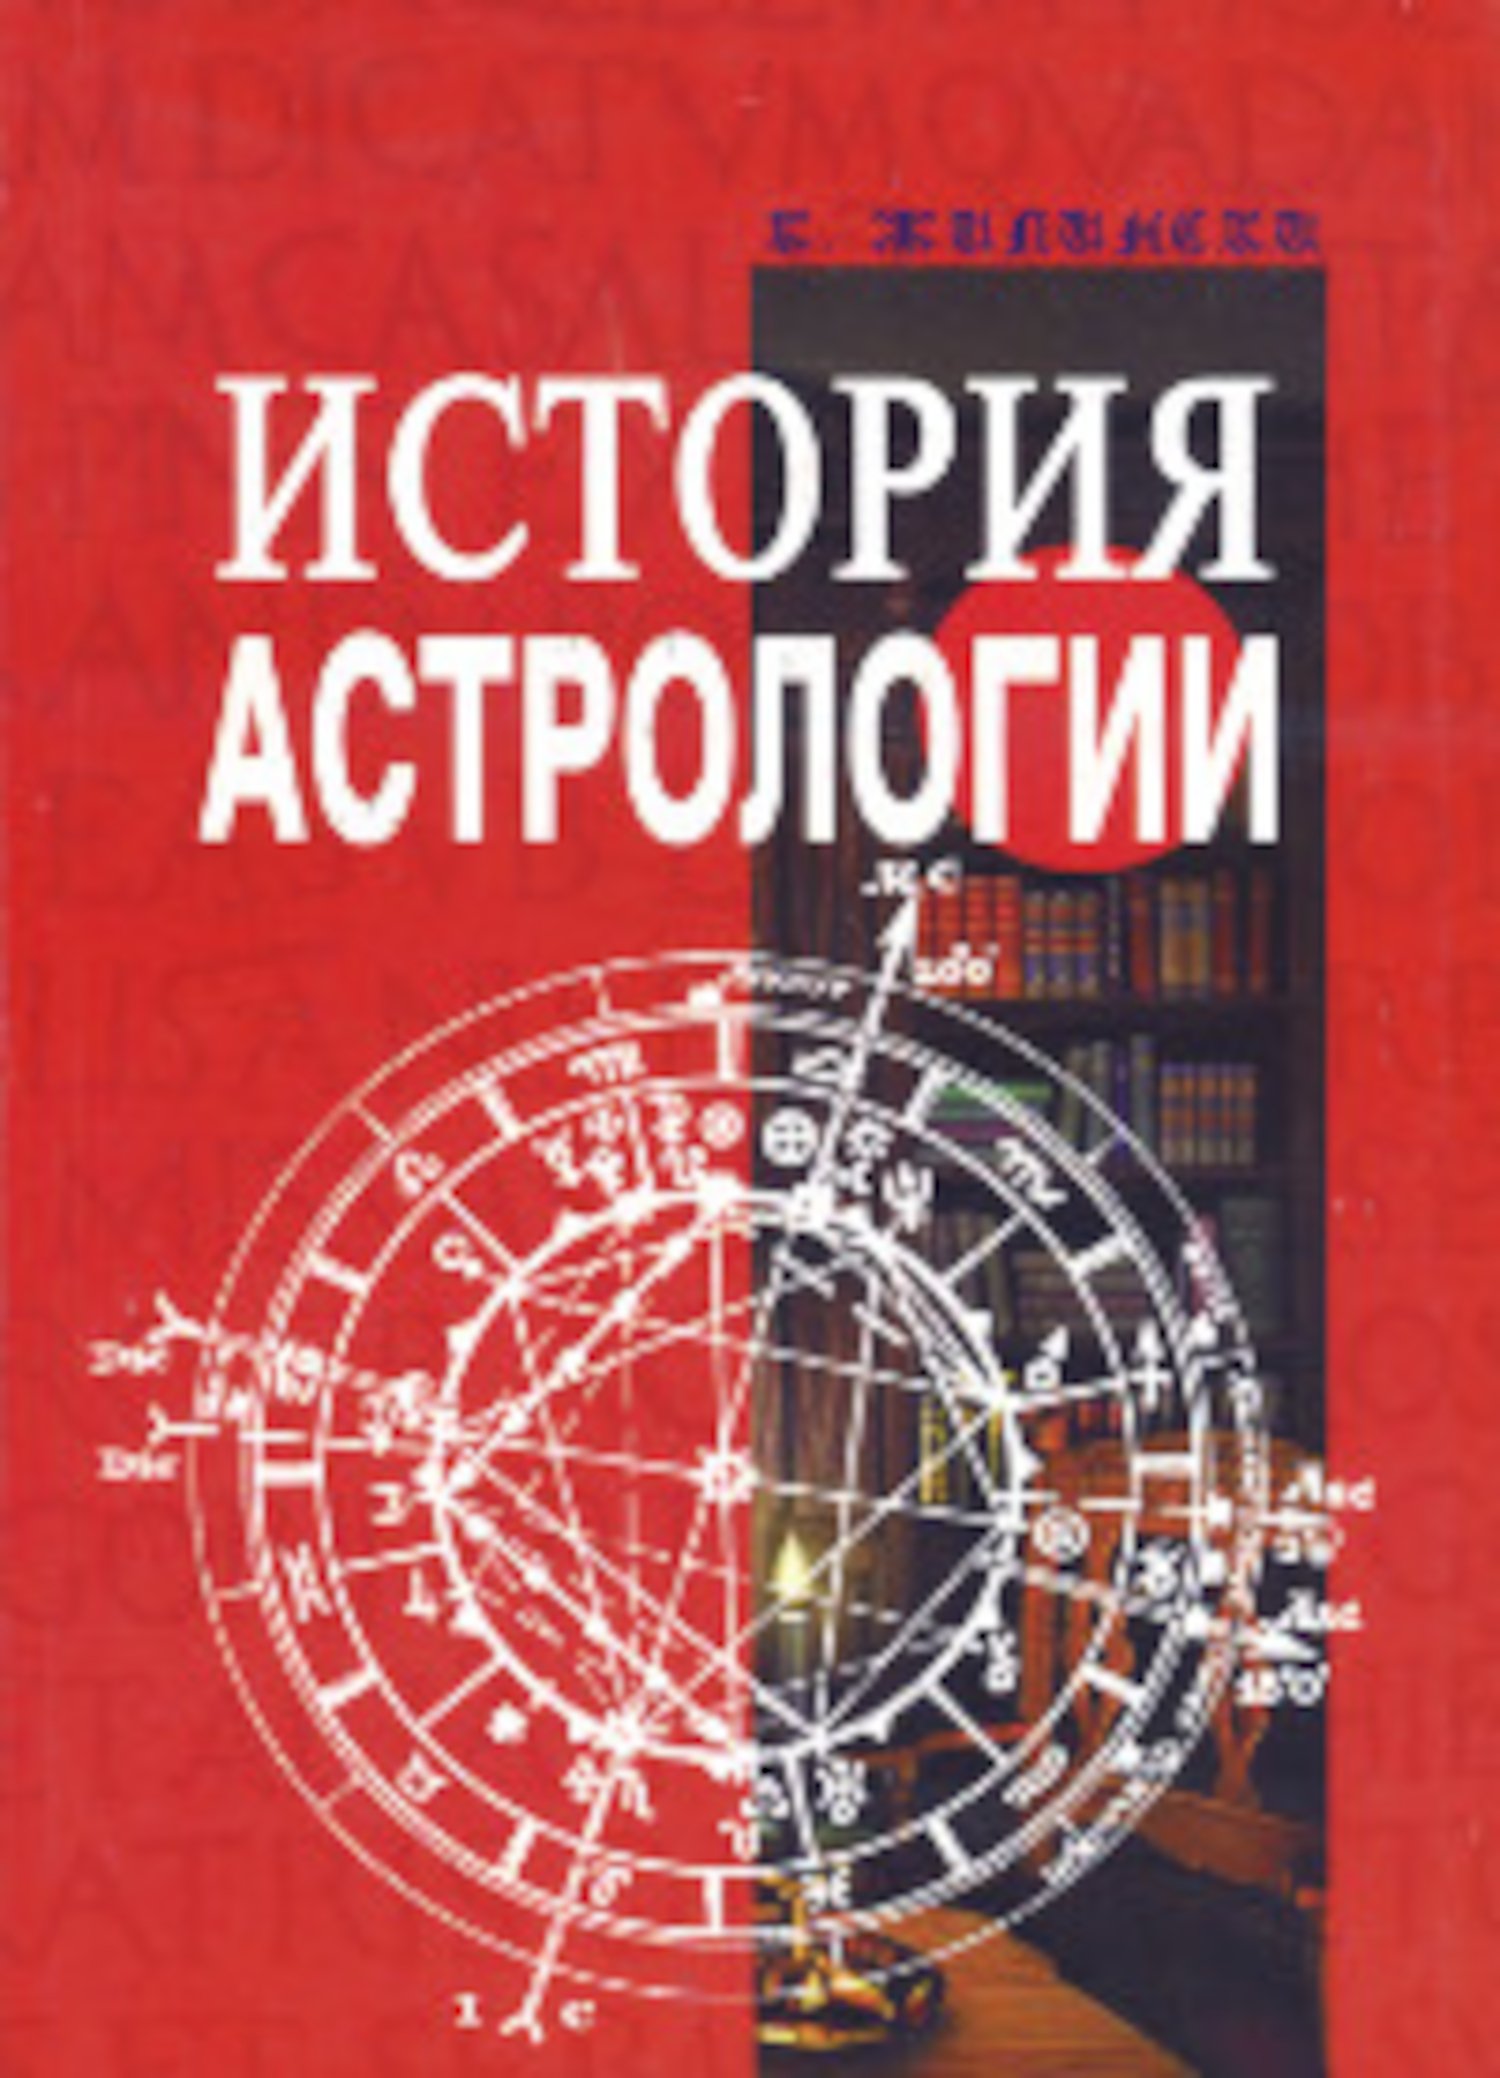 Купить книгу История астрологии Жилински К. в интернет-магазине Ариаварта